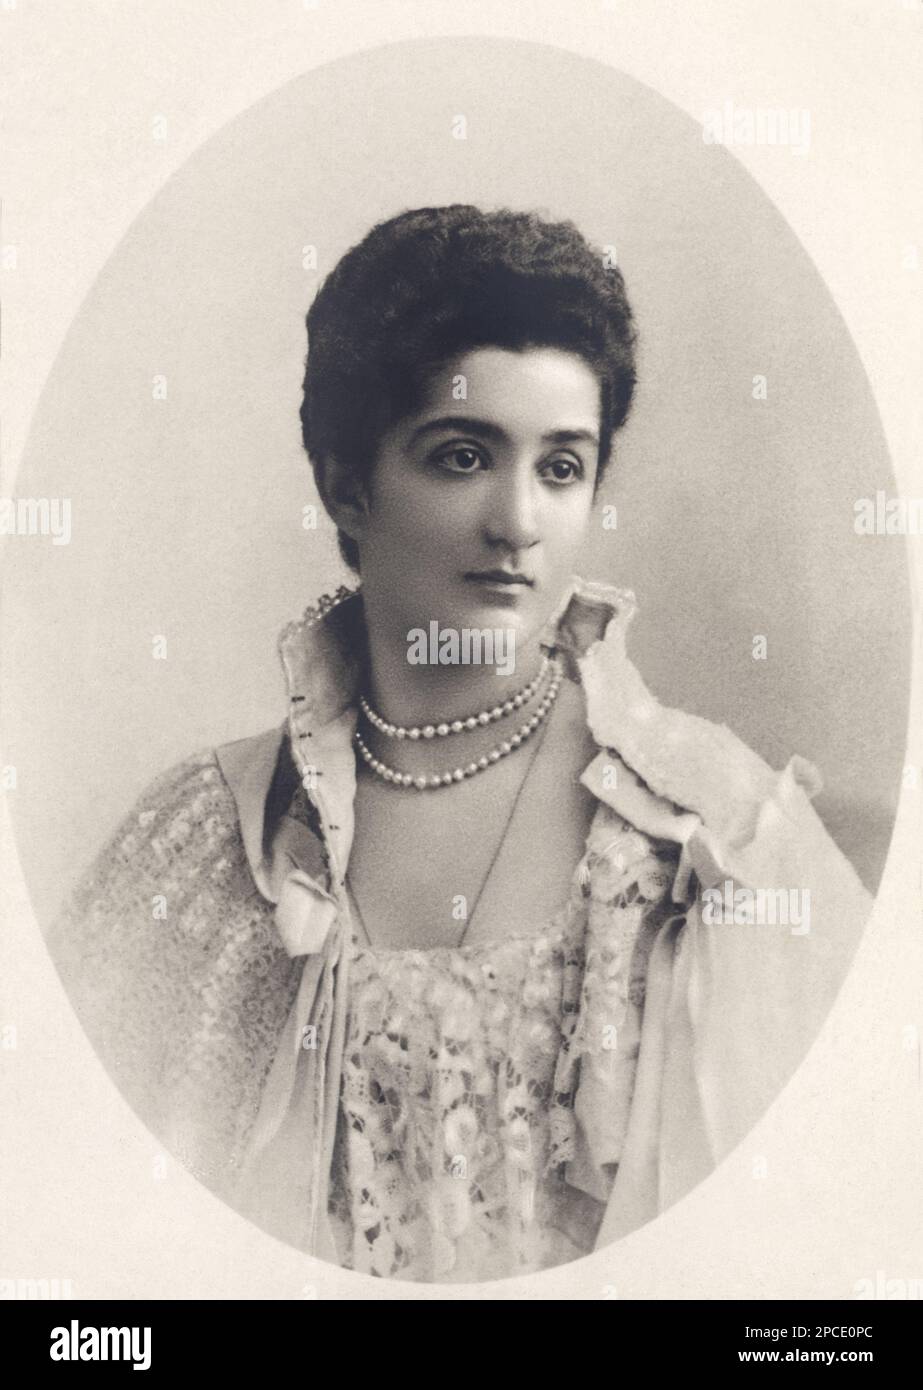 1900 environ , ITALIE : la Reine d'Italie ELENA ( Hélène du Monténégro , 1873 - 1952 ) En portrait officiel - CASA SAVOIA - ITALIA - REALI - Nobiltà ITALIANA - NOBLESSE - ROYALTIES - HISTOIRE - FOTO STORICHE - gioiello - gioielli - bijoux - joaillerie - collier de perles - encolure - decolleté - pizzo - dentelle - BELLE EPOQUE - mignon ---- Archivio GBB Banque D'Images